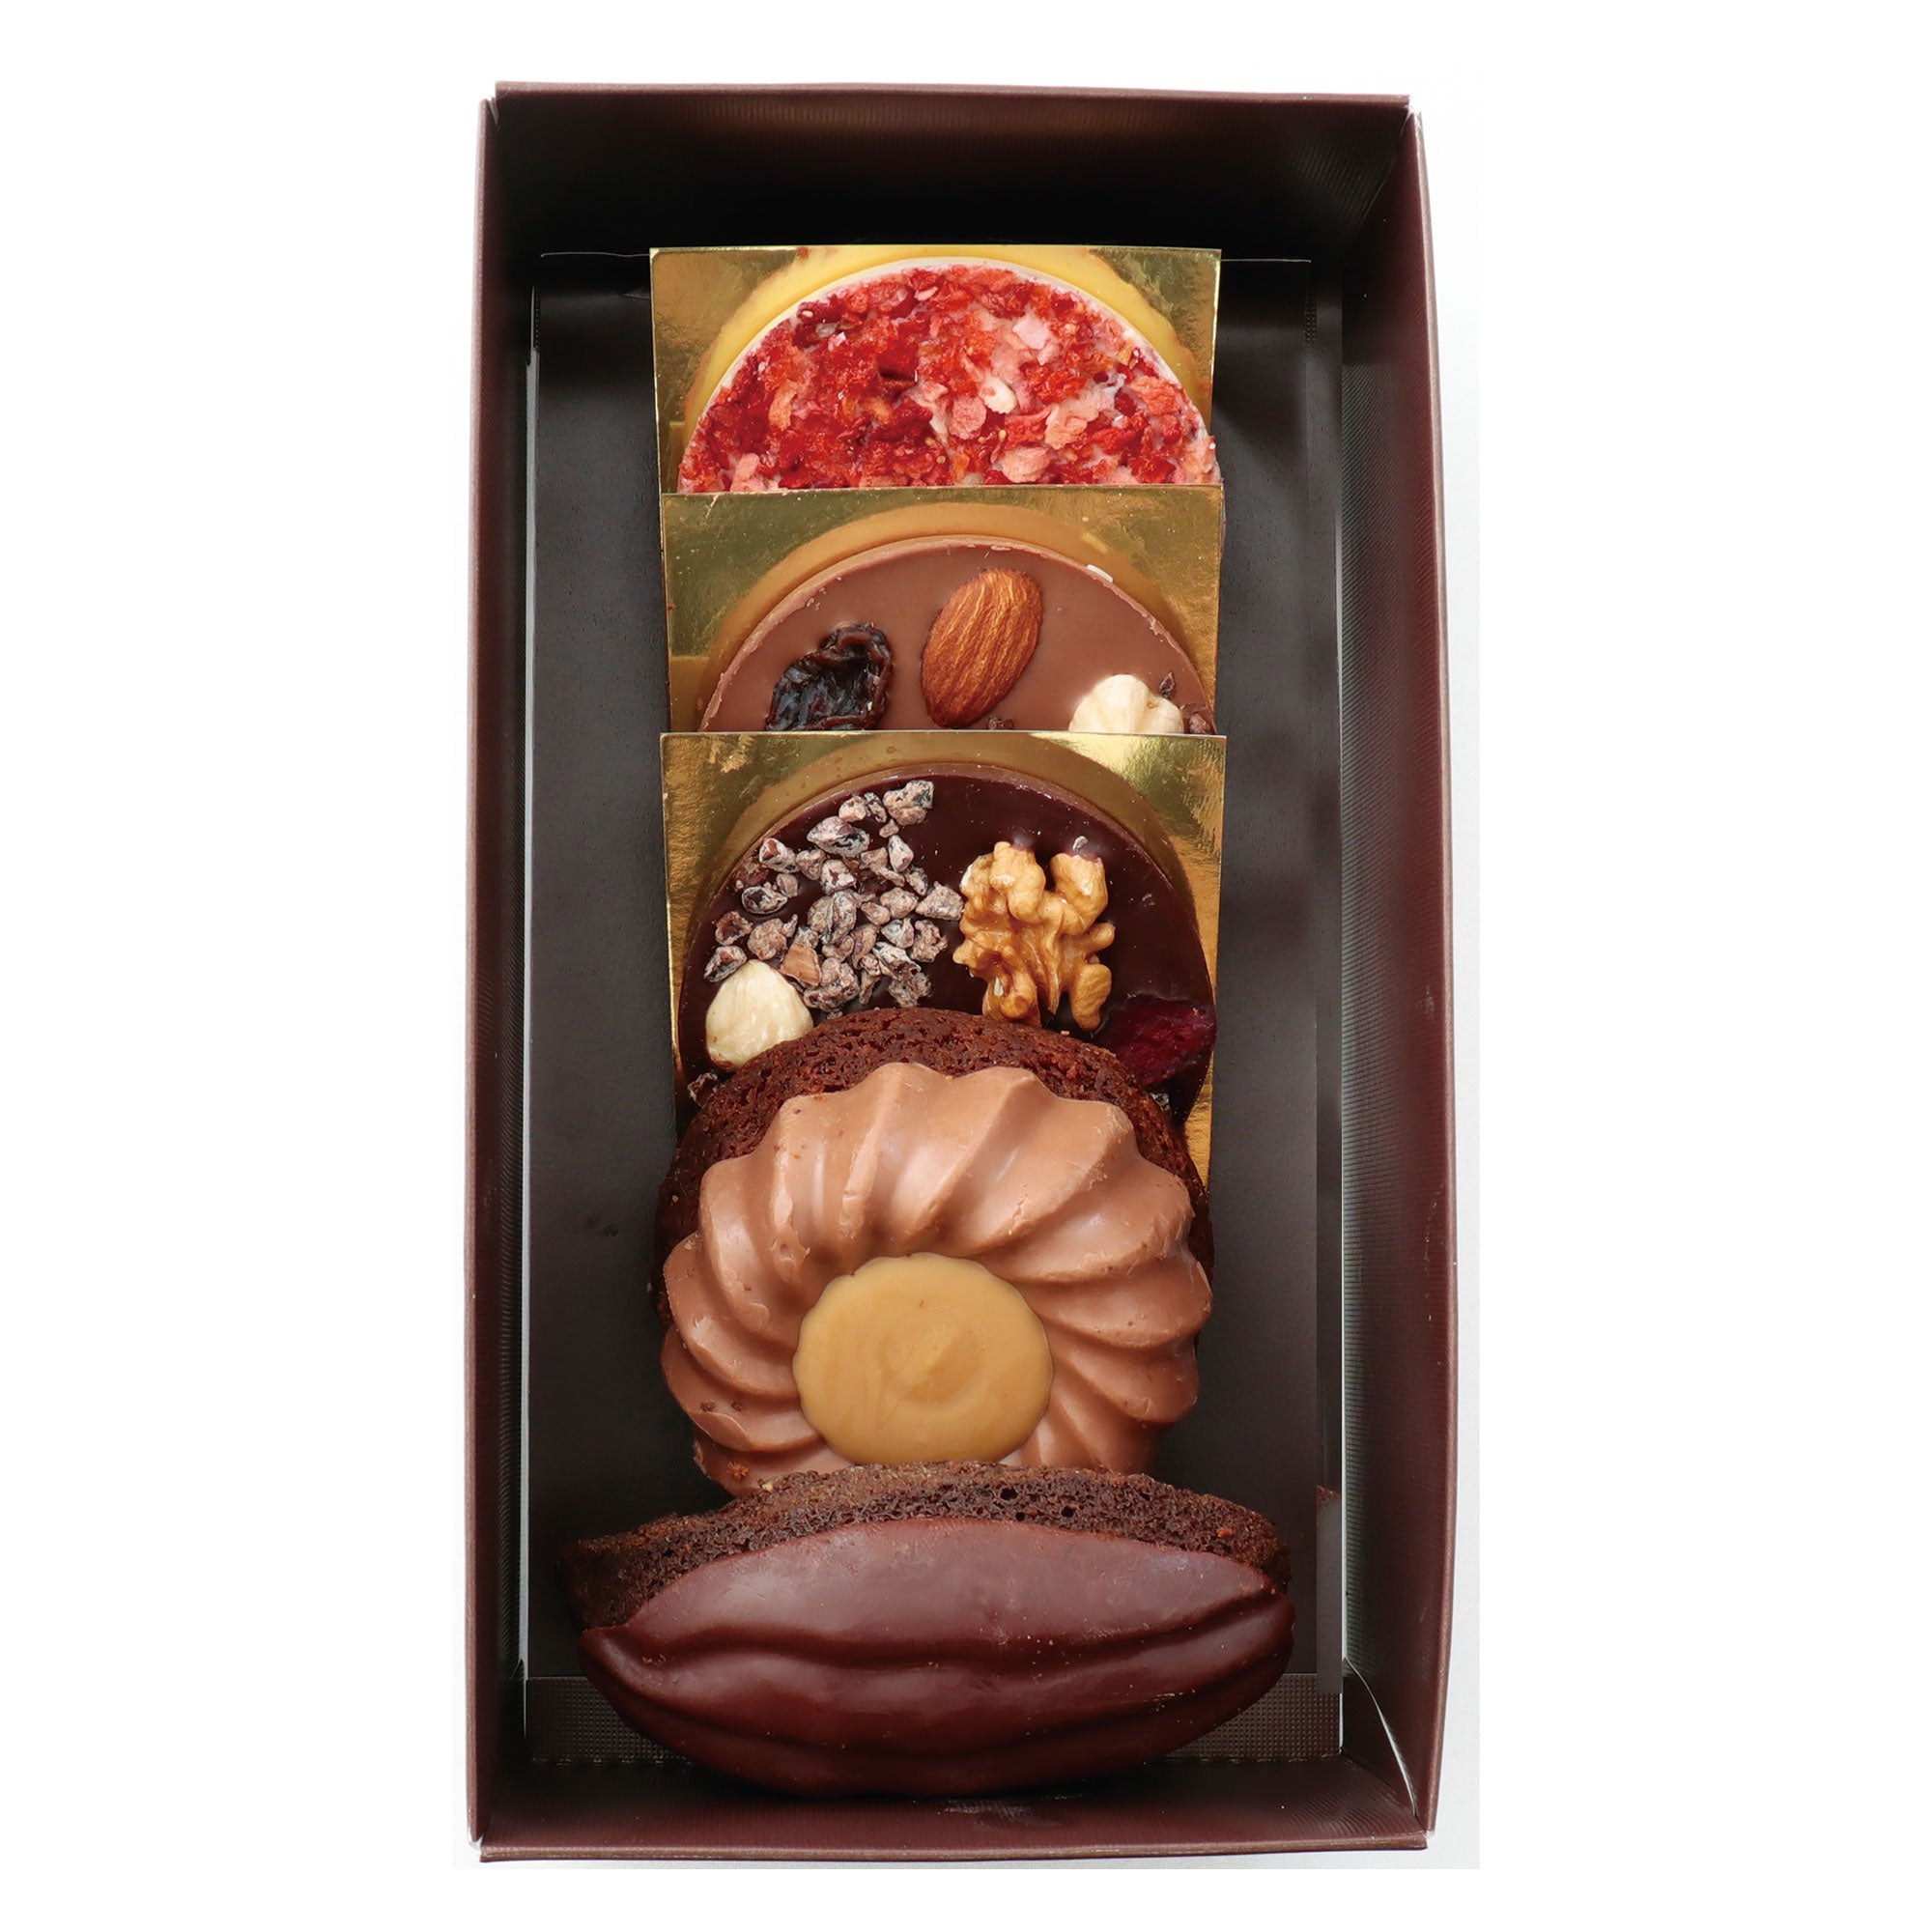 ショコラ ベルアメール】ガトー&パレショコラSS チョコレート 焼き菓子